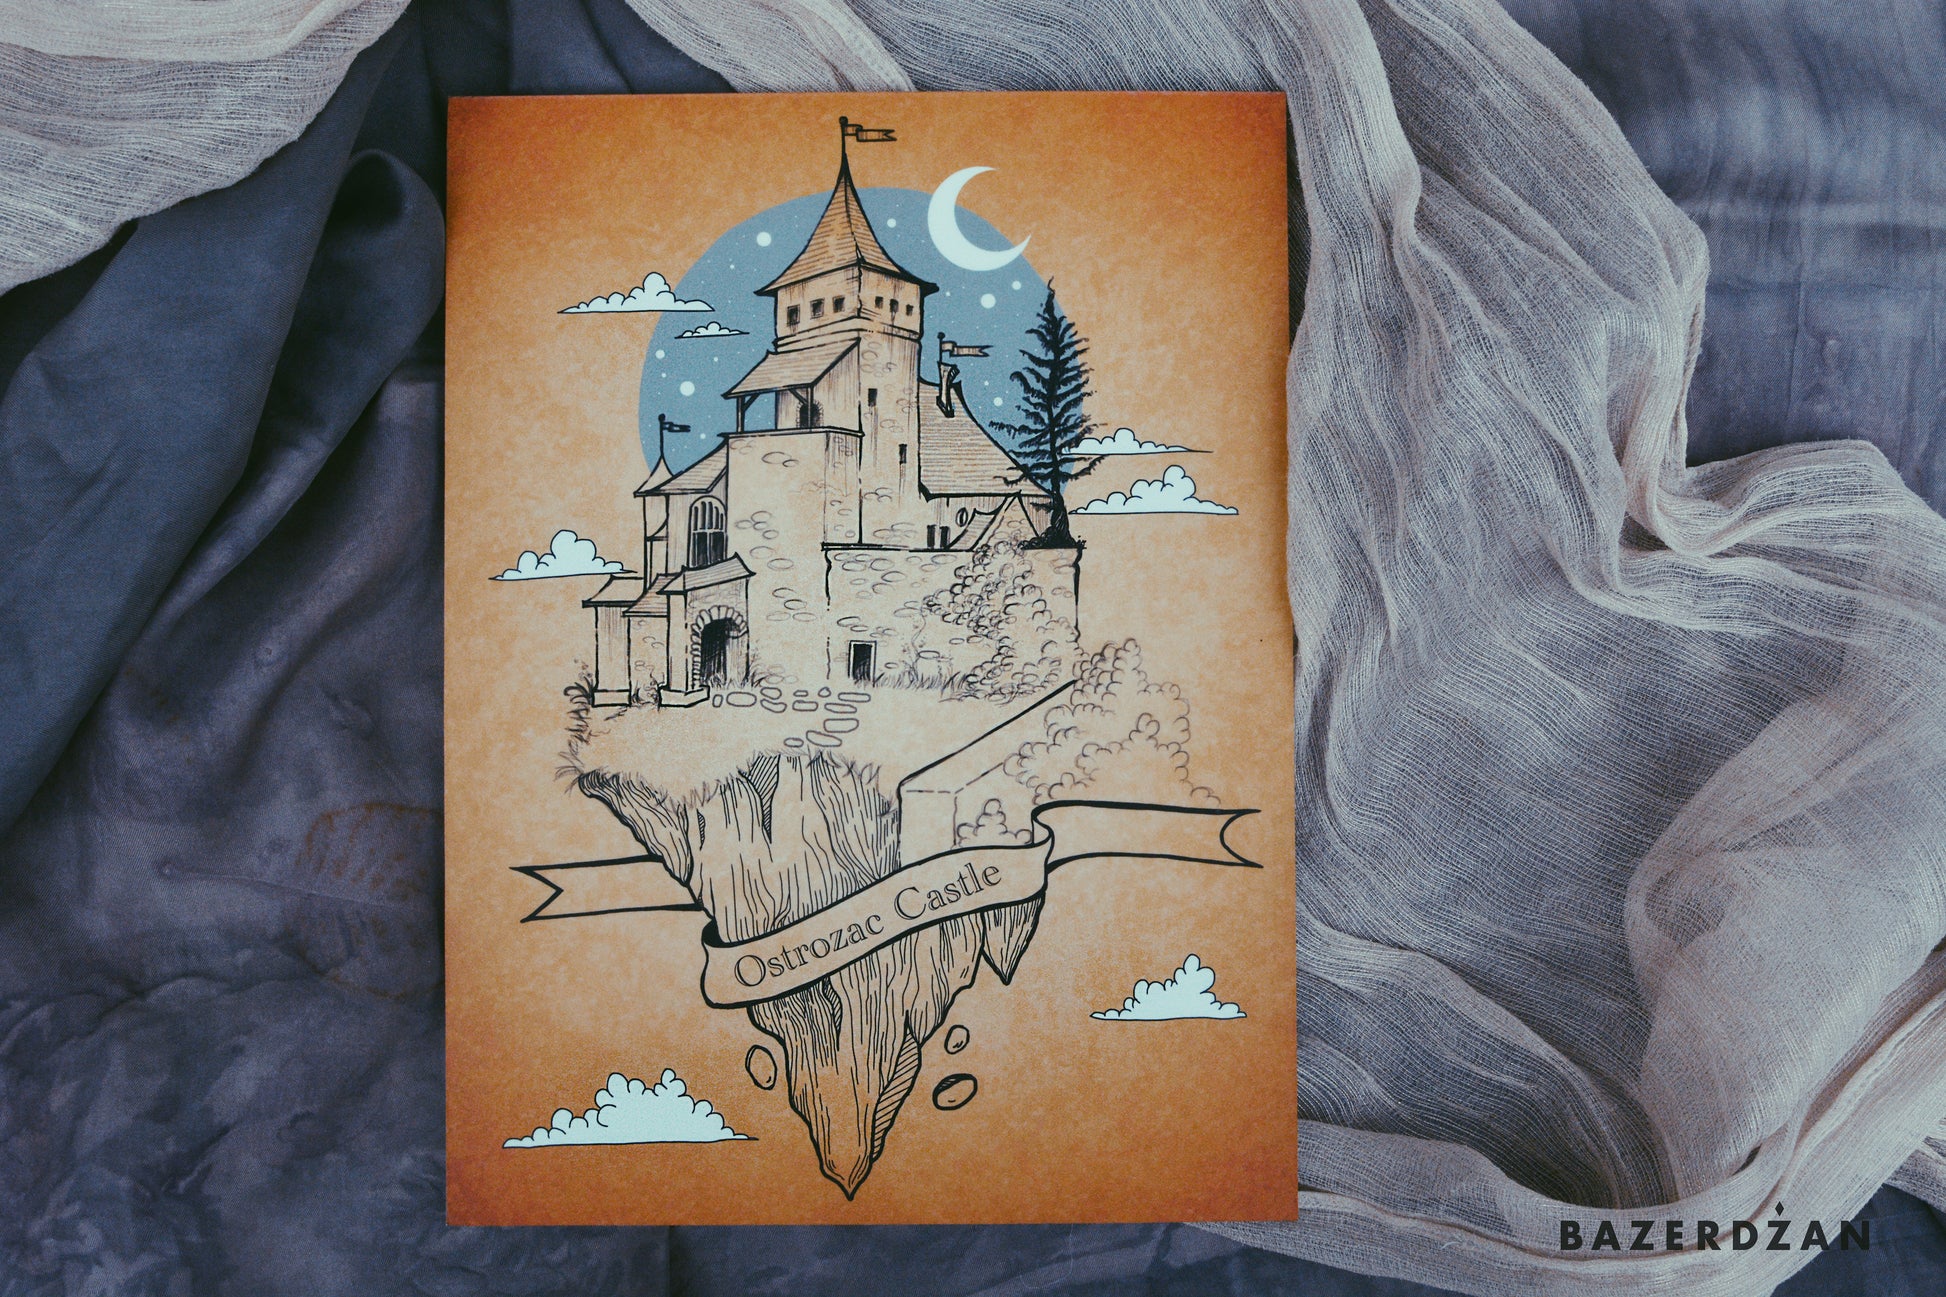 Ostrozac Castle, illustration by Ina Cano - Bazerdzan